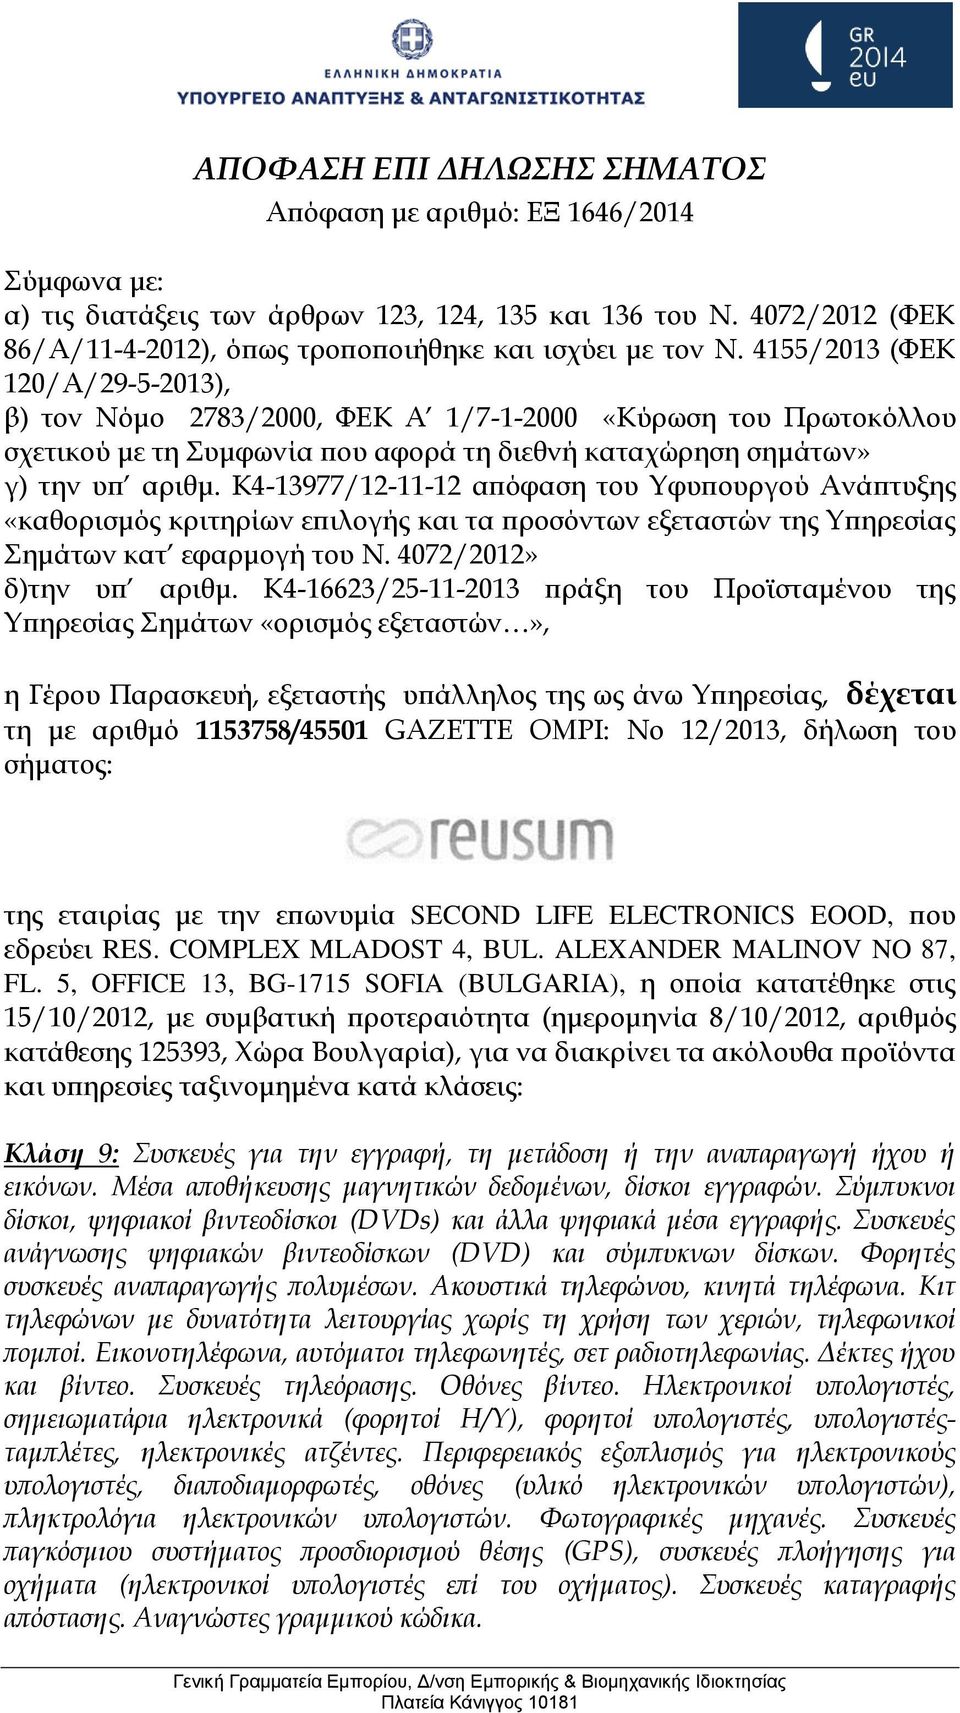 5, OFFICE 13, BG-1715 SOFIA (BULGARIA), η οποία κατατέθηκε στις 15/10/2012, με συμβατική προτεραιότητα (ημερομηνία 8/10/2012, αριθμός κατάθεσης 125393, Χώρα Βουλγαρία), για να διακρίνει τα ακόλουθα